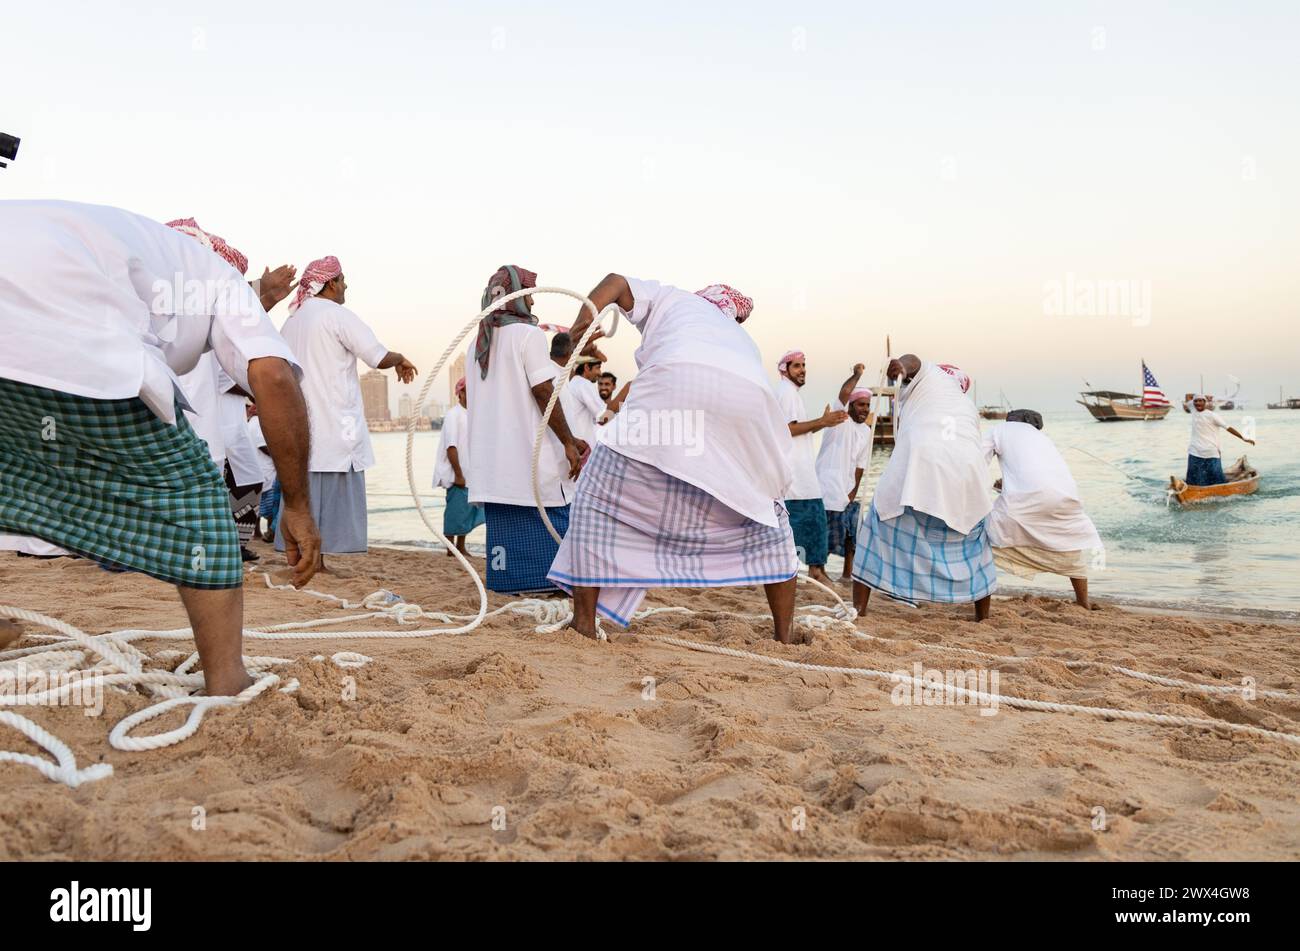 Des pêcheurs arabes non identifiés tirent leur senne hors de la mer sur la plage de Katara, Doha, Qatar. La pêche reste la principale source de revenus pour les habitants. Banque D'Images